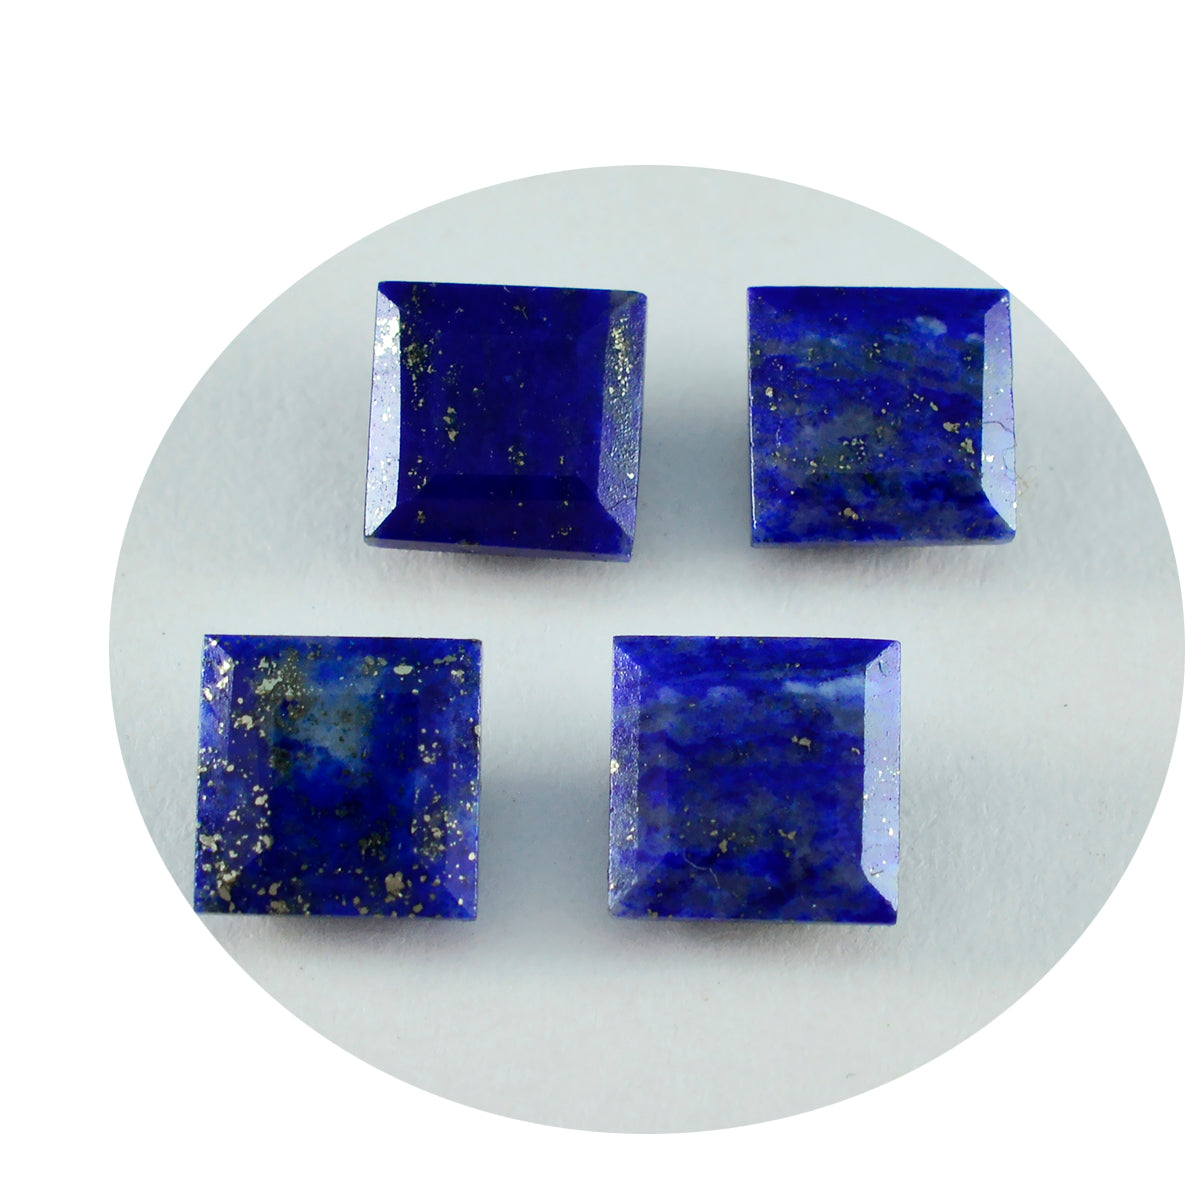 riyogems 1pc リアルブルー ラピスラズリ ファセット 9x9 mm 正方形の形状の驚くべき品質の宝石